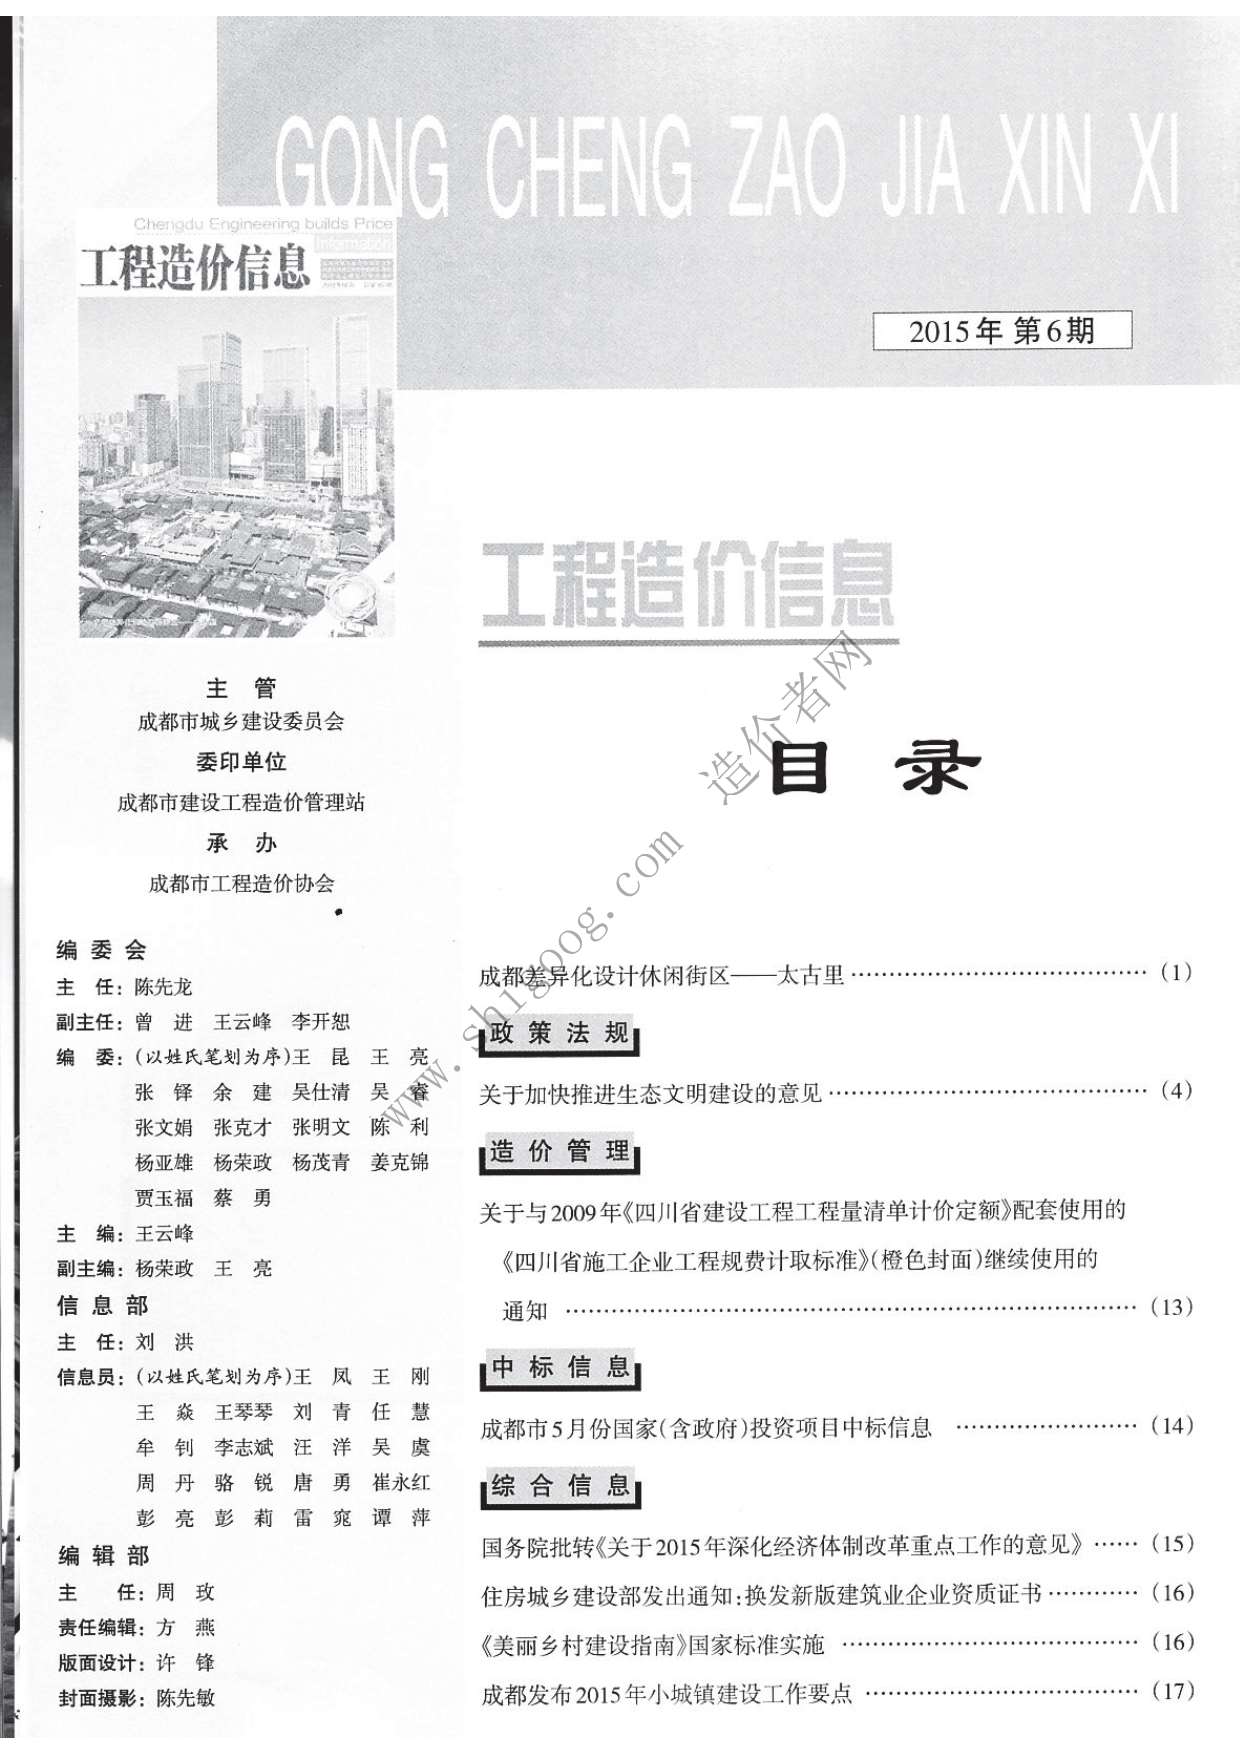 成都市2015年6月工程信息价_成都市信息价期刊PDF扫描件电子版